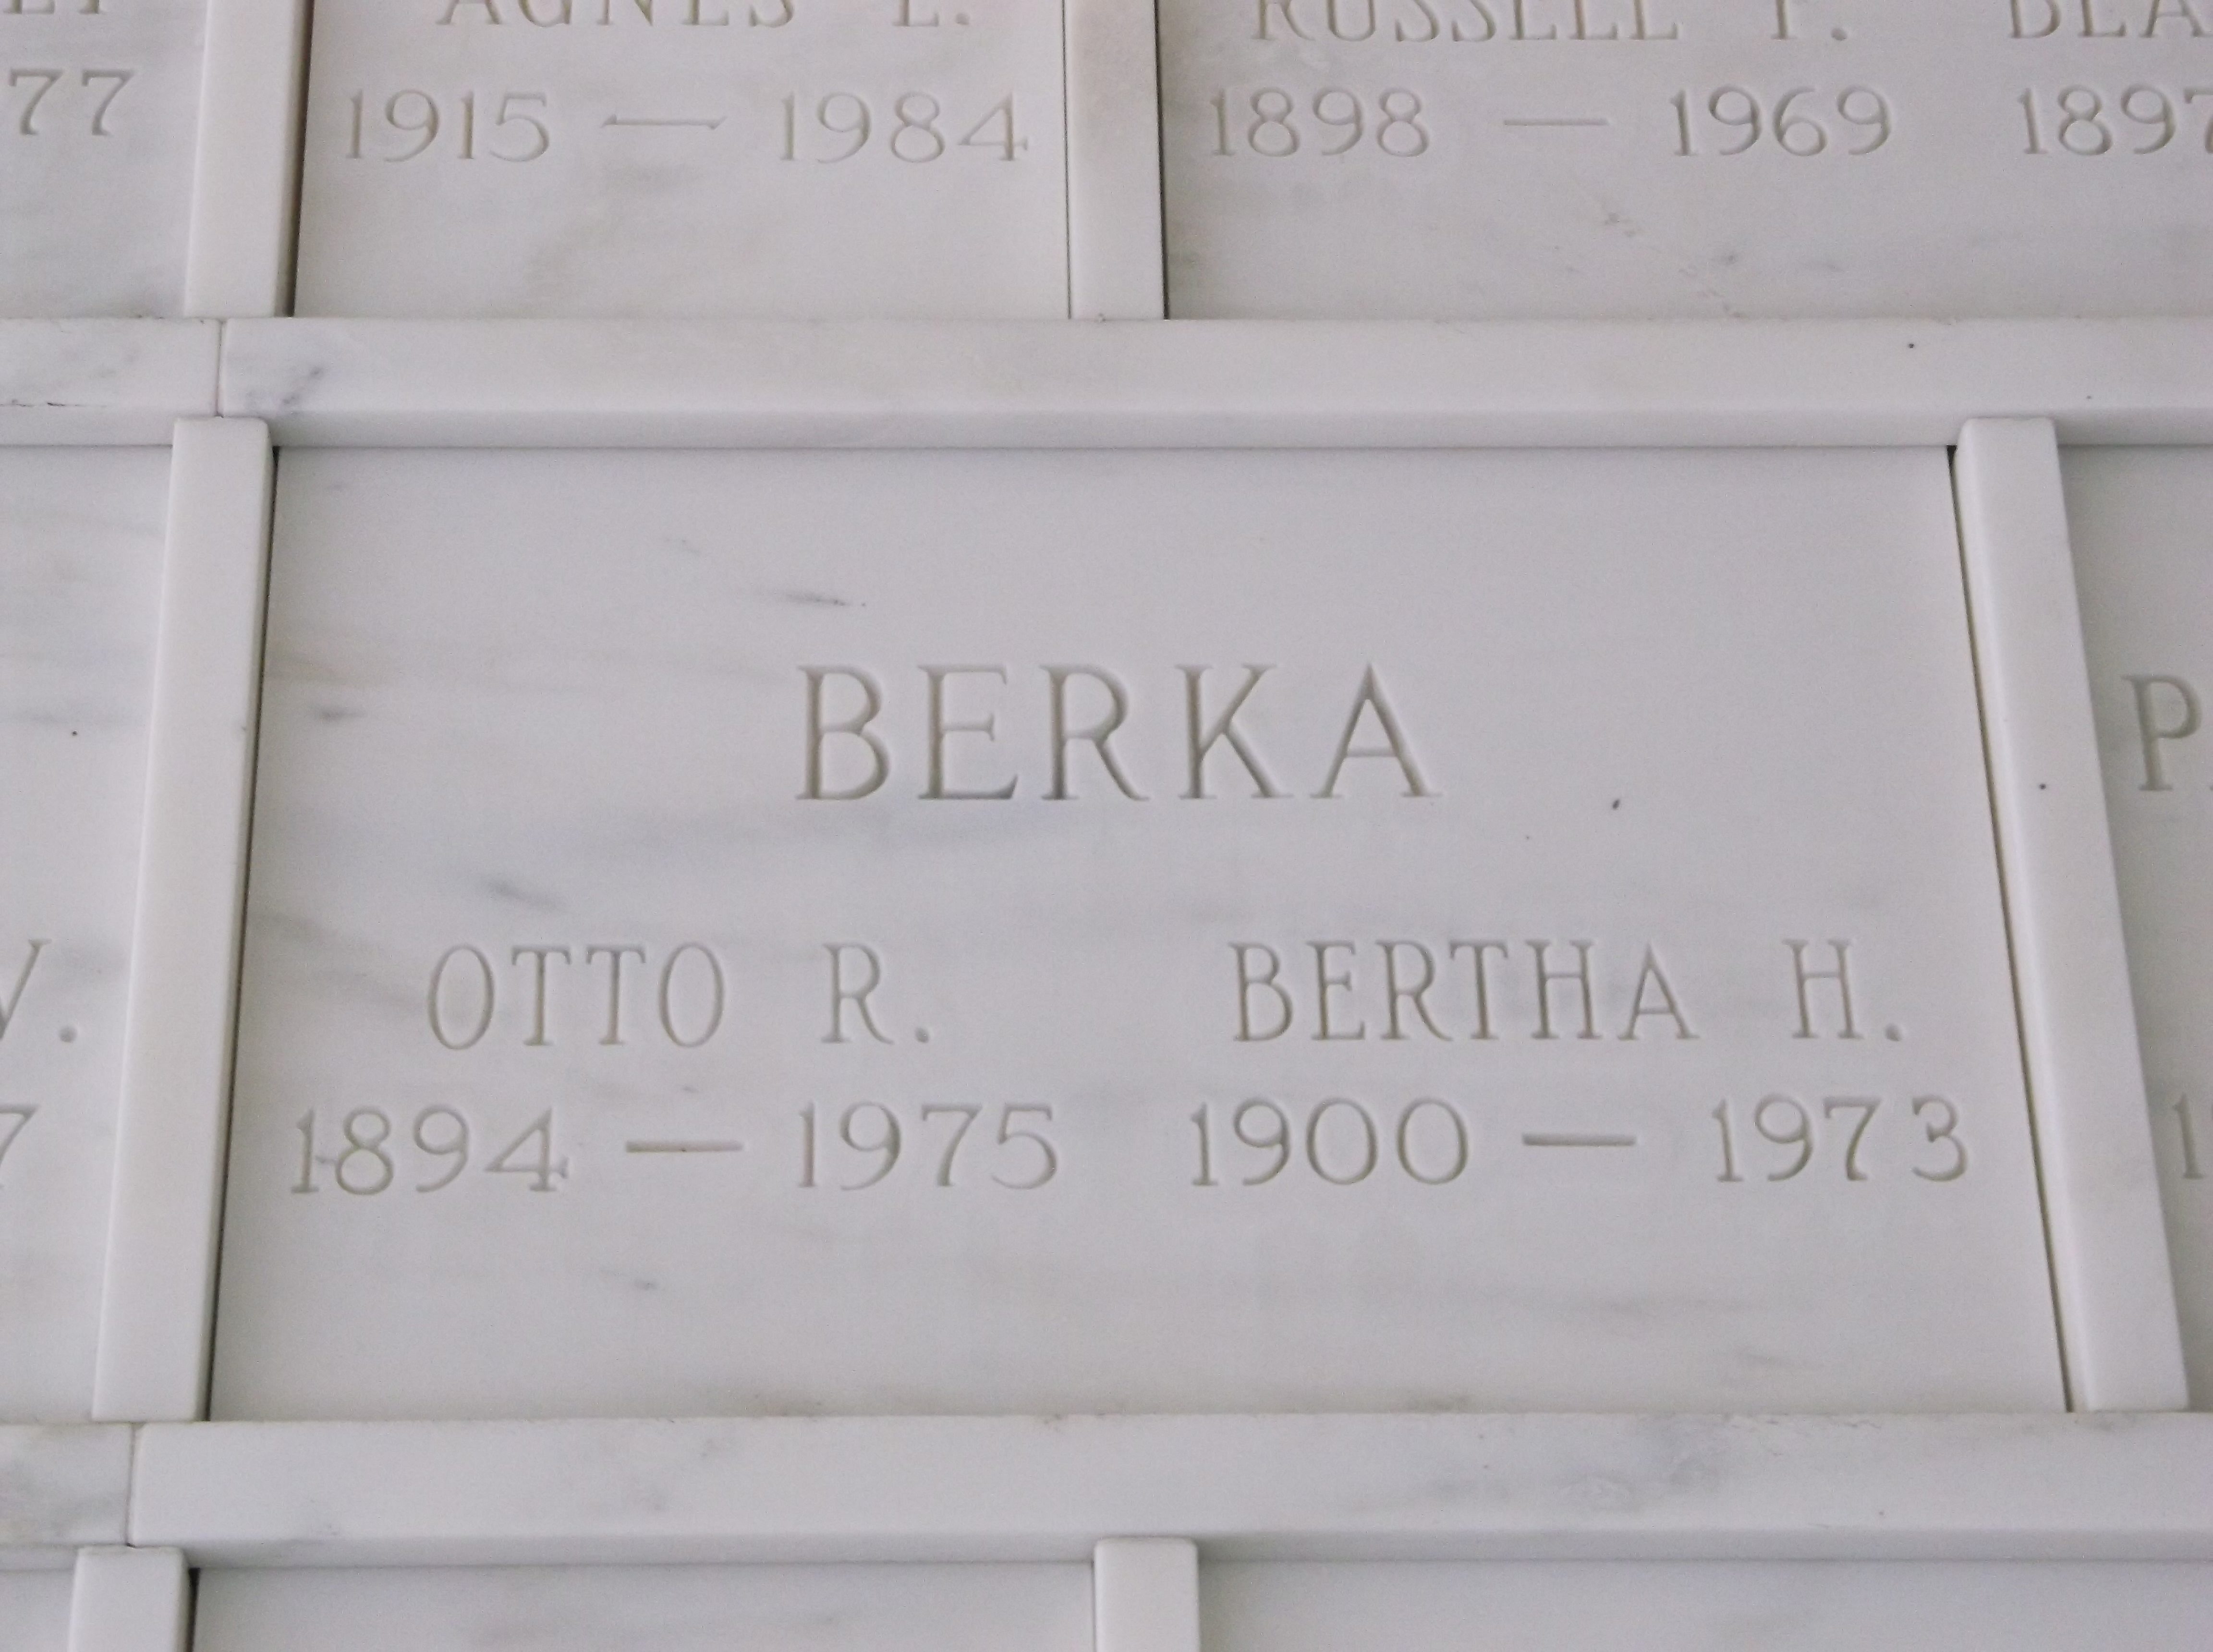 Bertha H Berka